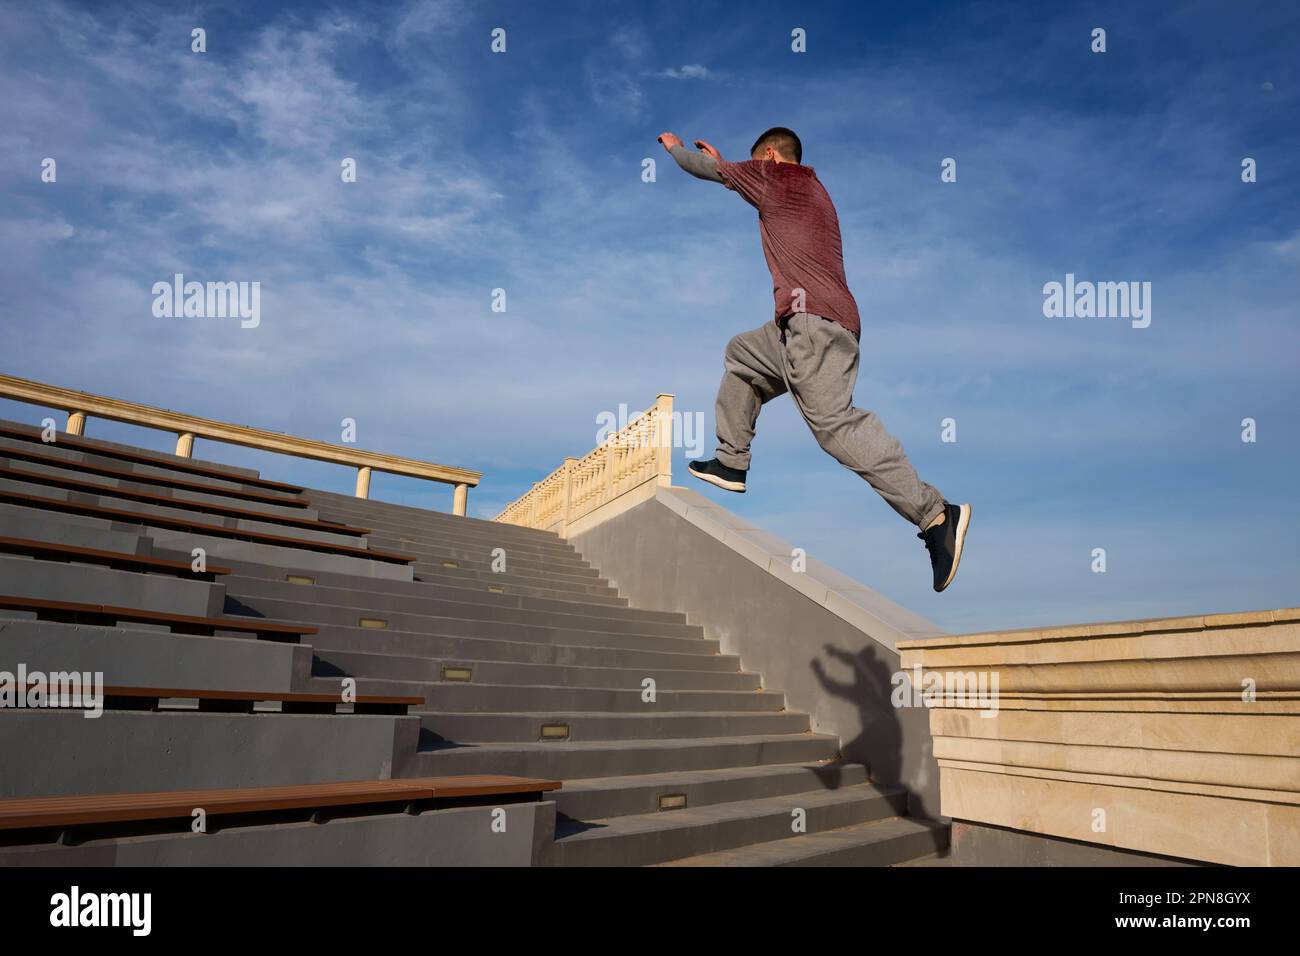 Sportler, der Parkour-Tricks im städtischen Raum vorführt. Parkoursportler, der hoch über die Treppe springt, draußen vor blauem Himmel. Extremsport, freier Außenbereich Stockfoto